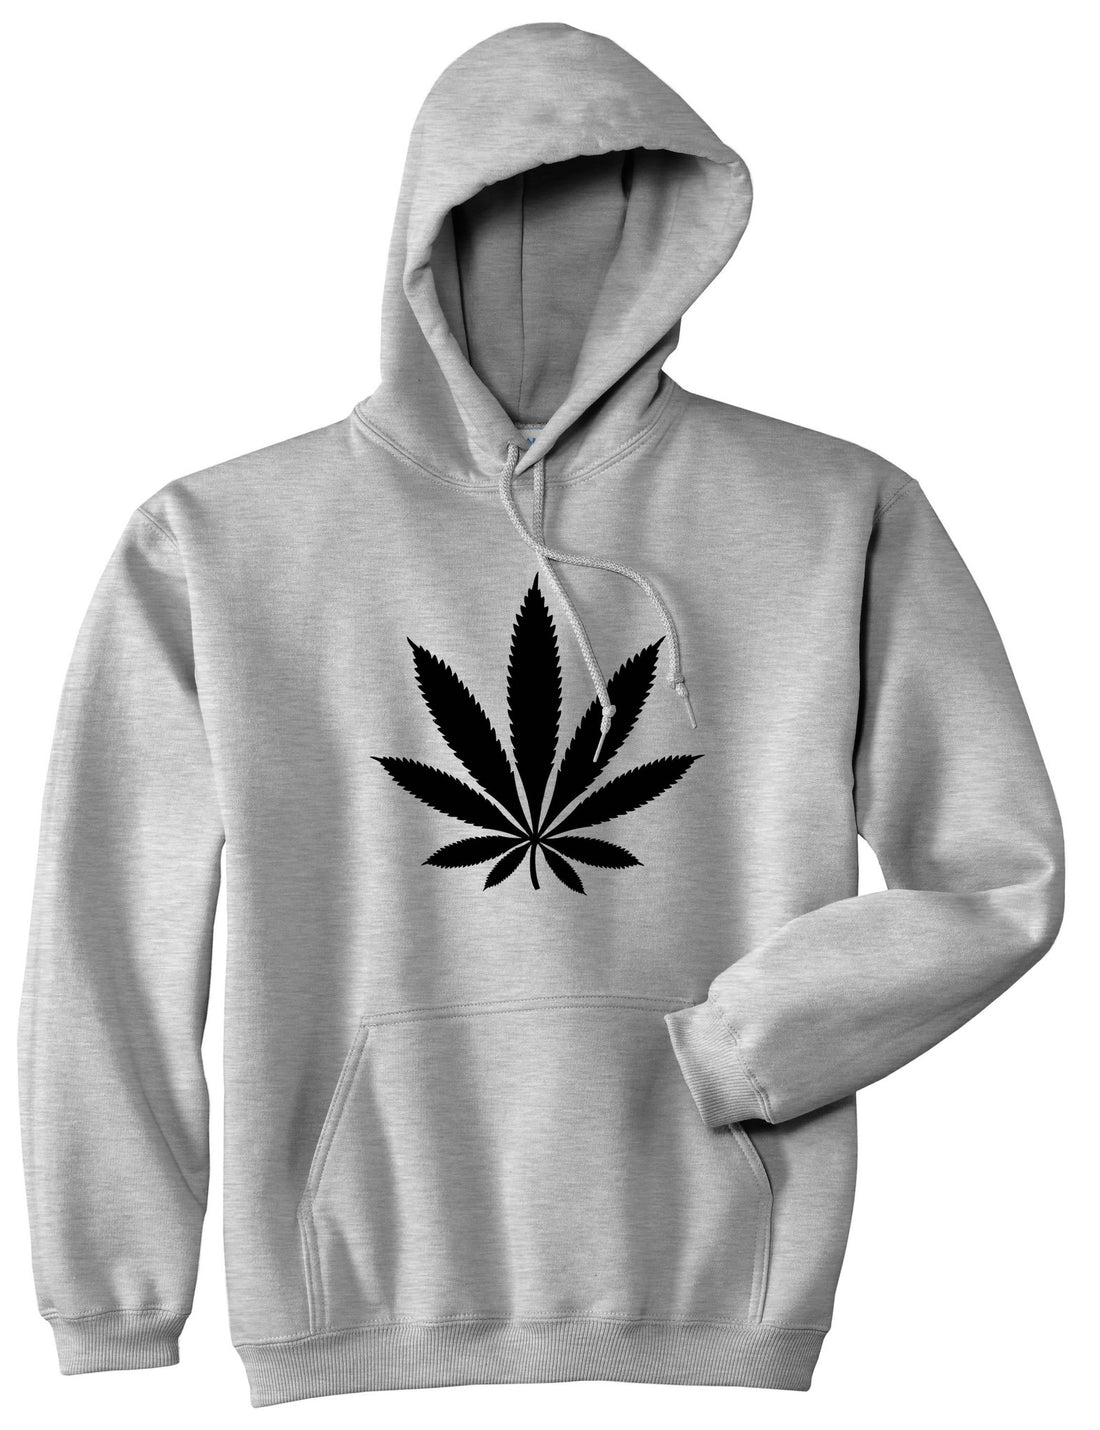 Weed Leaf Marijuana Pullover Hoodie Hoody by Kings Of NY